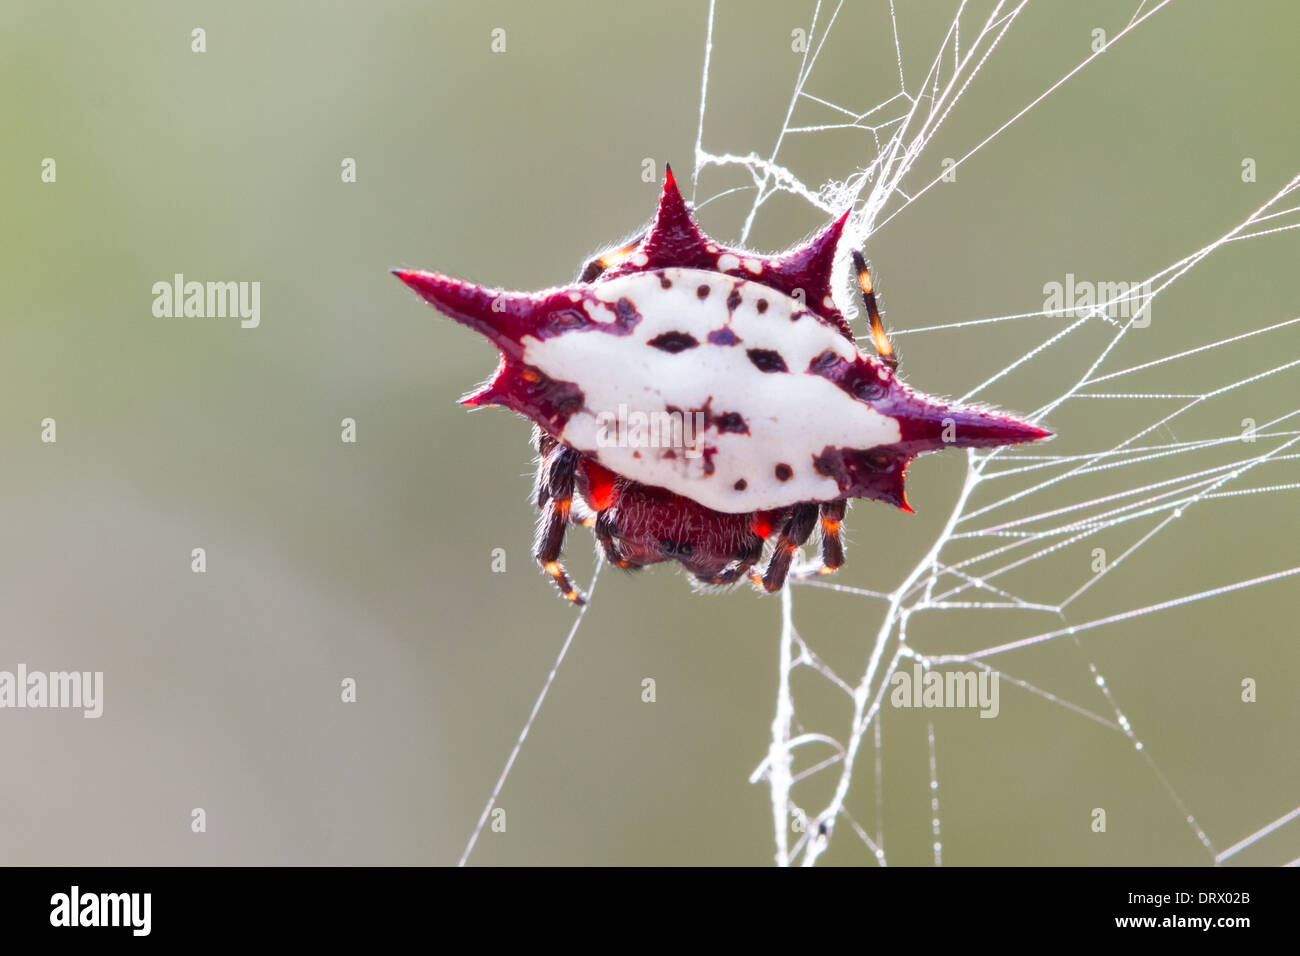 Spiny-backed Orbweaver (Gasteracantha cancriformis) on its web Stock Photo